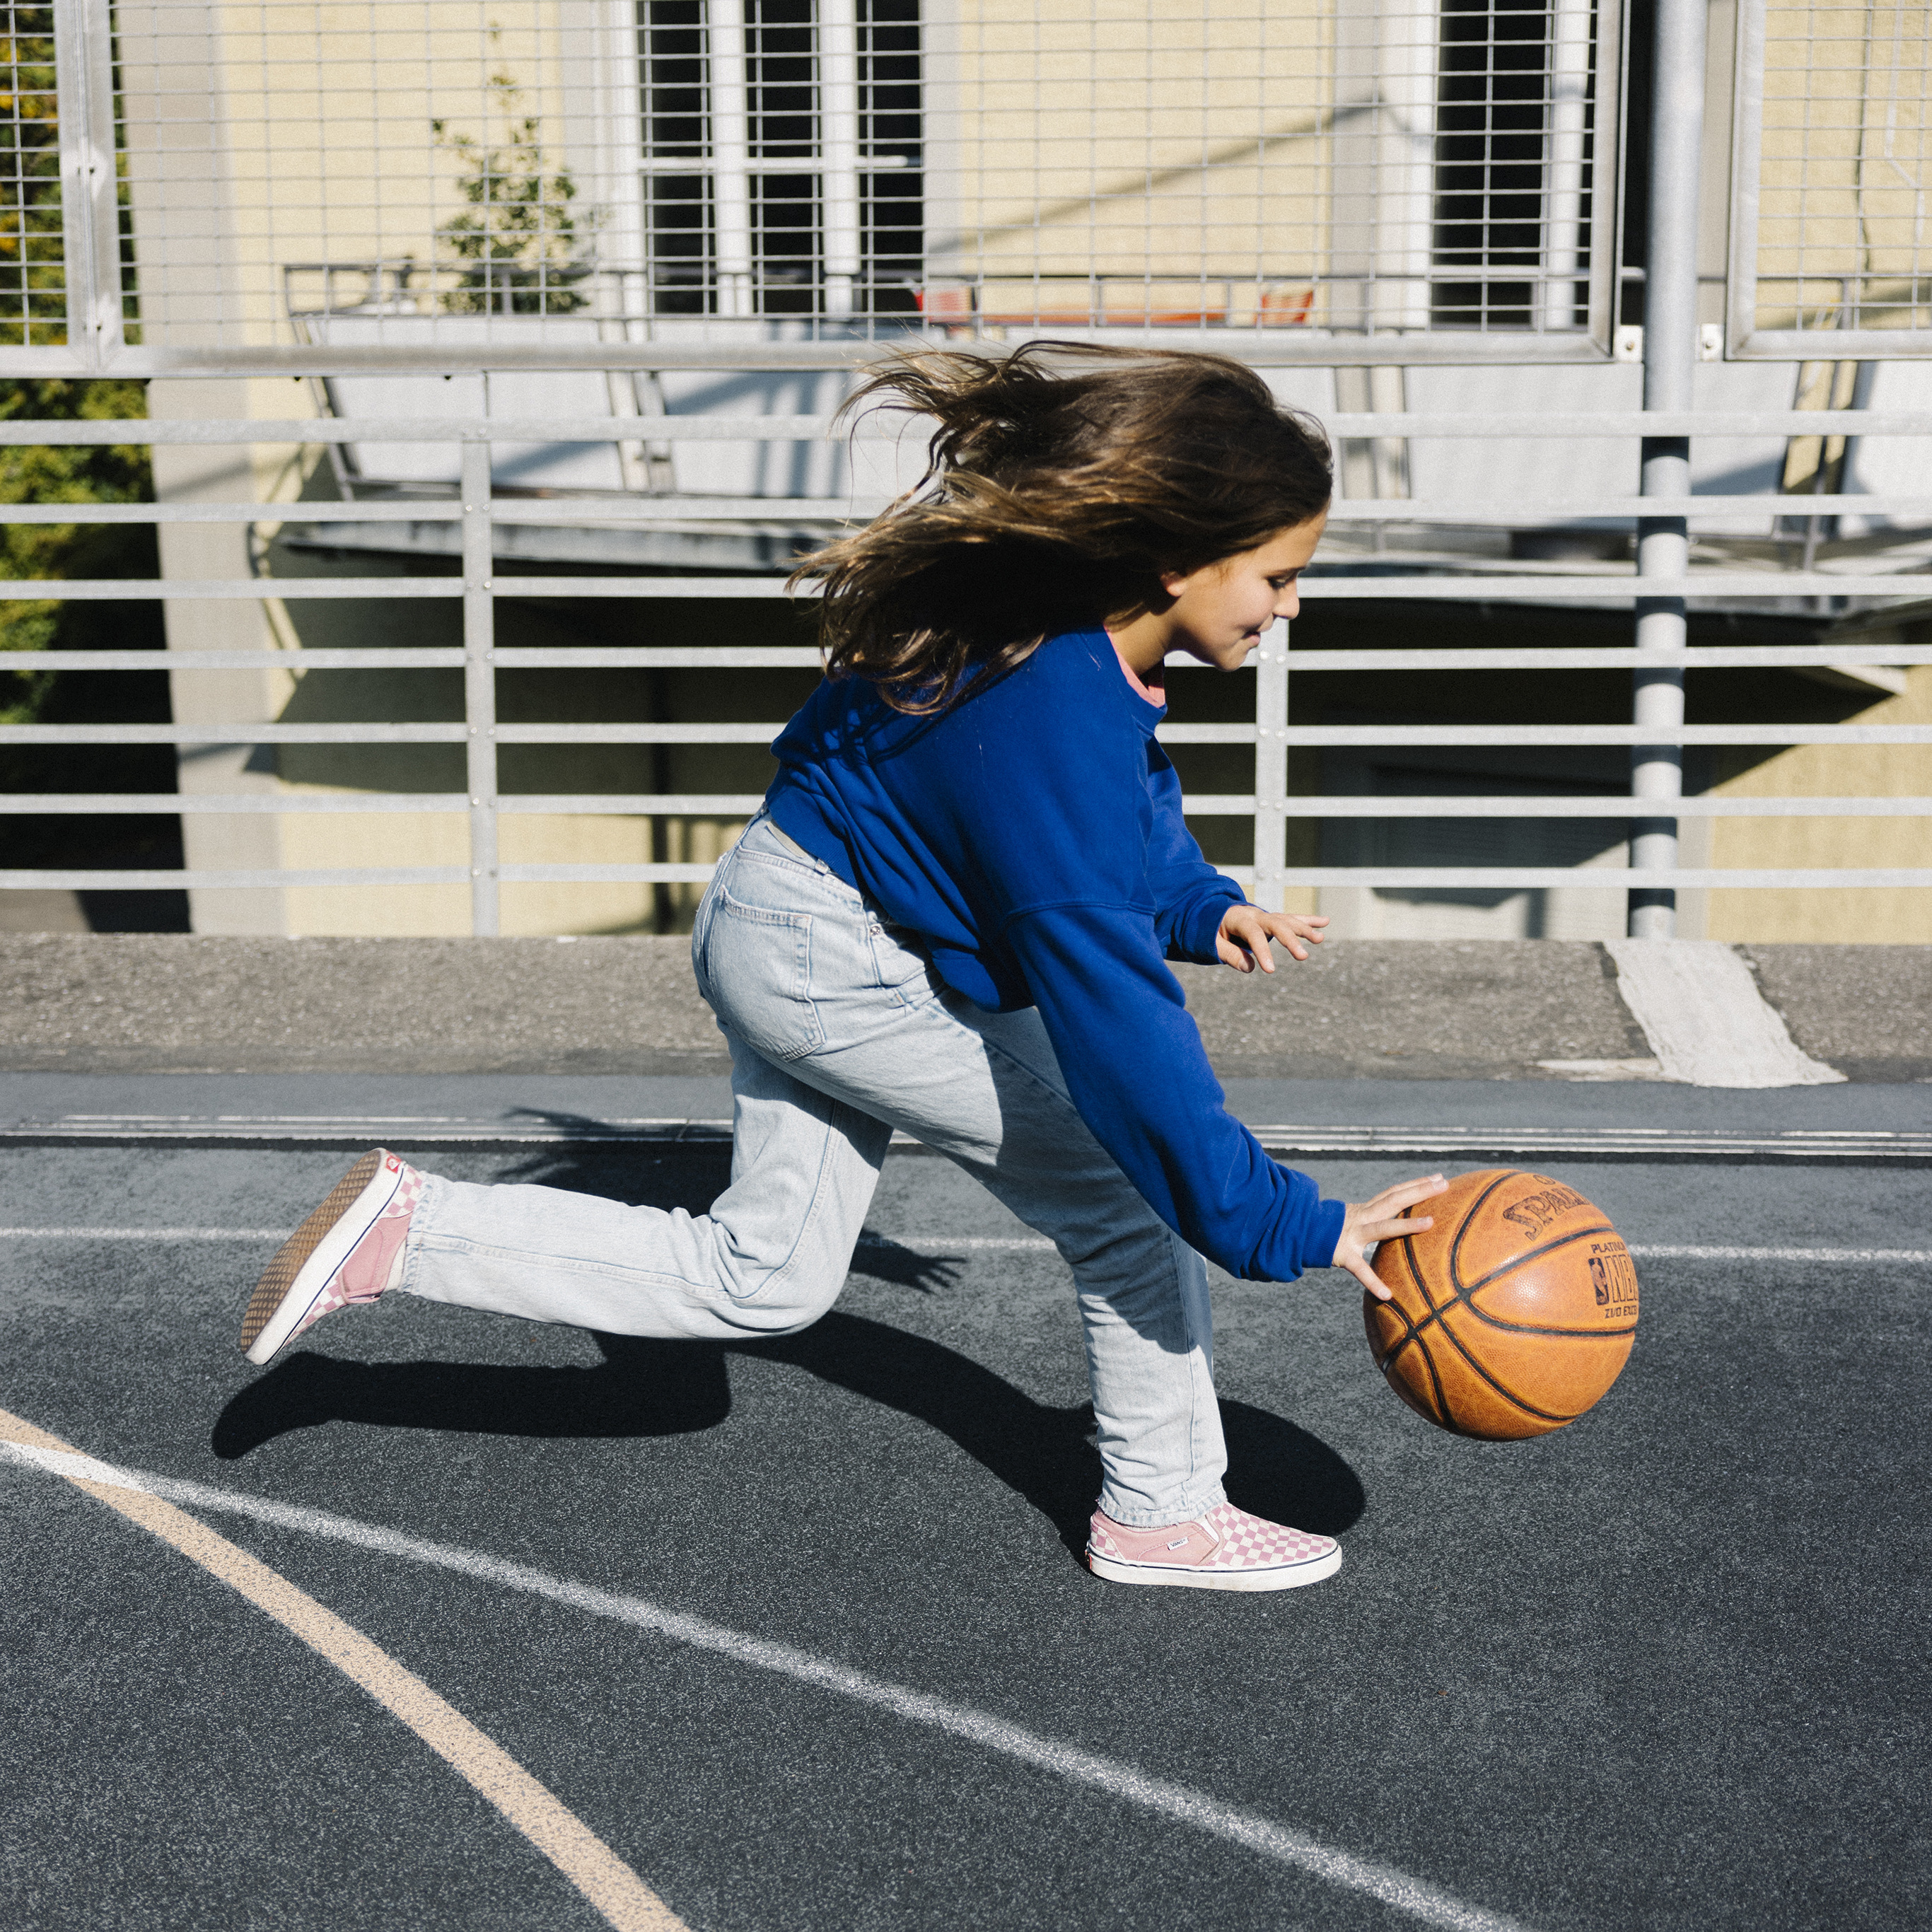 Una ragazza palleggia una palla da basket sul terreno mentre corre.